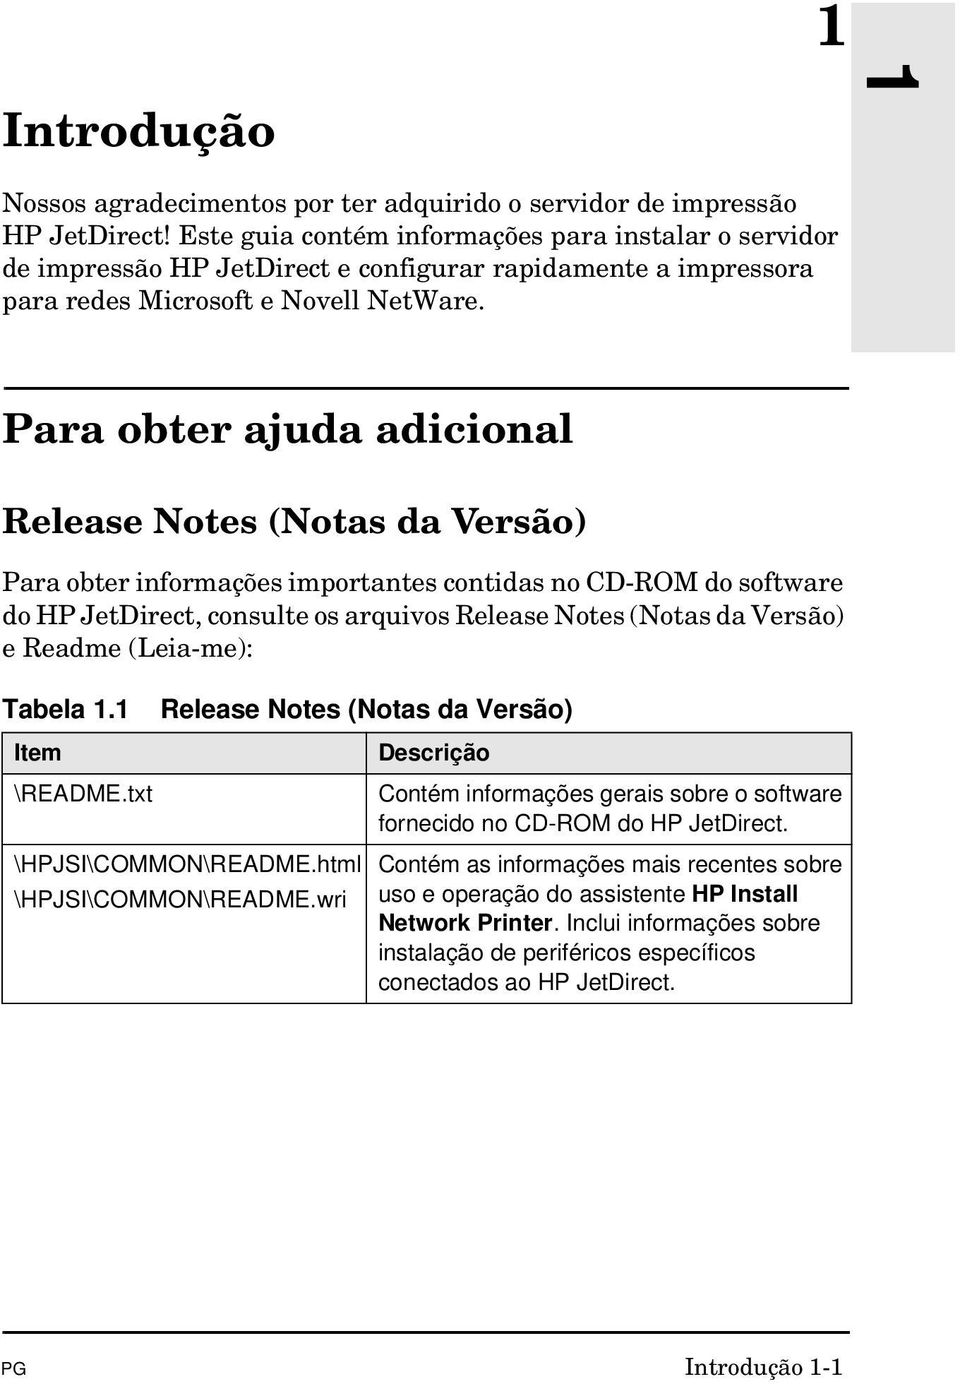 Para obter ajuda adicional Release Notes (Notas da Versão) Para obter informações importantes contidas no CD-ROM do software do HP JetDirect, consulte os arquivos Release Notes (Notas da Versão) e